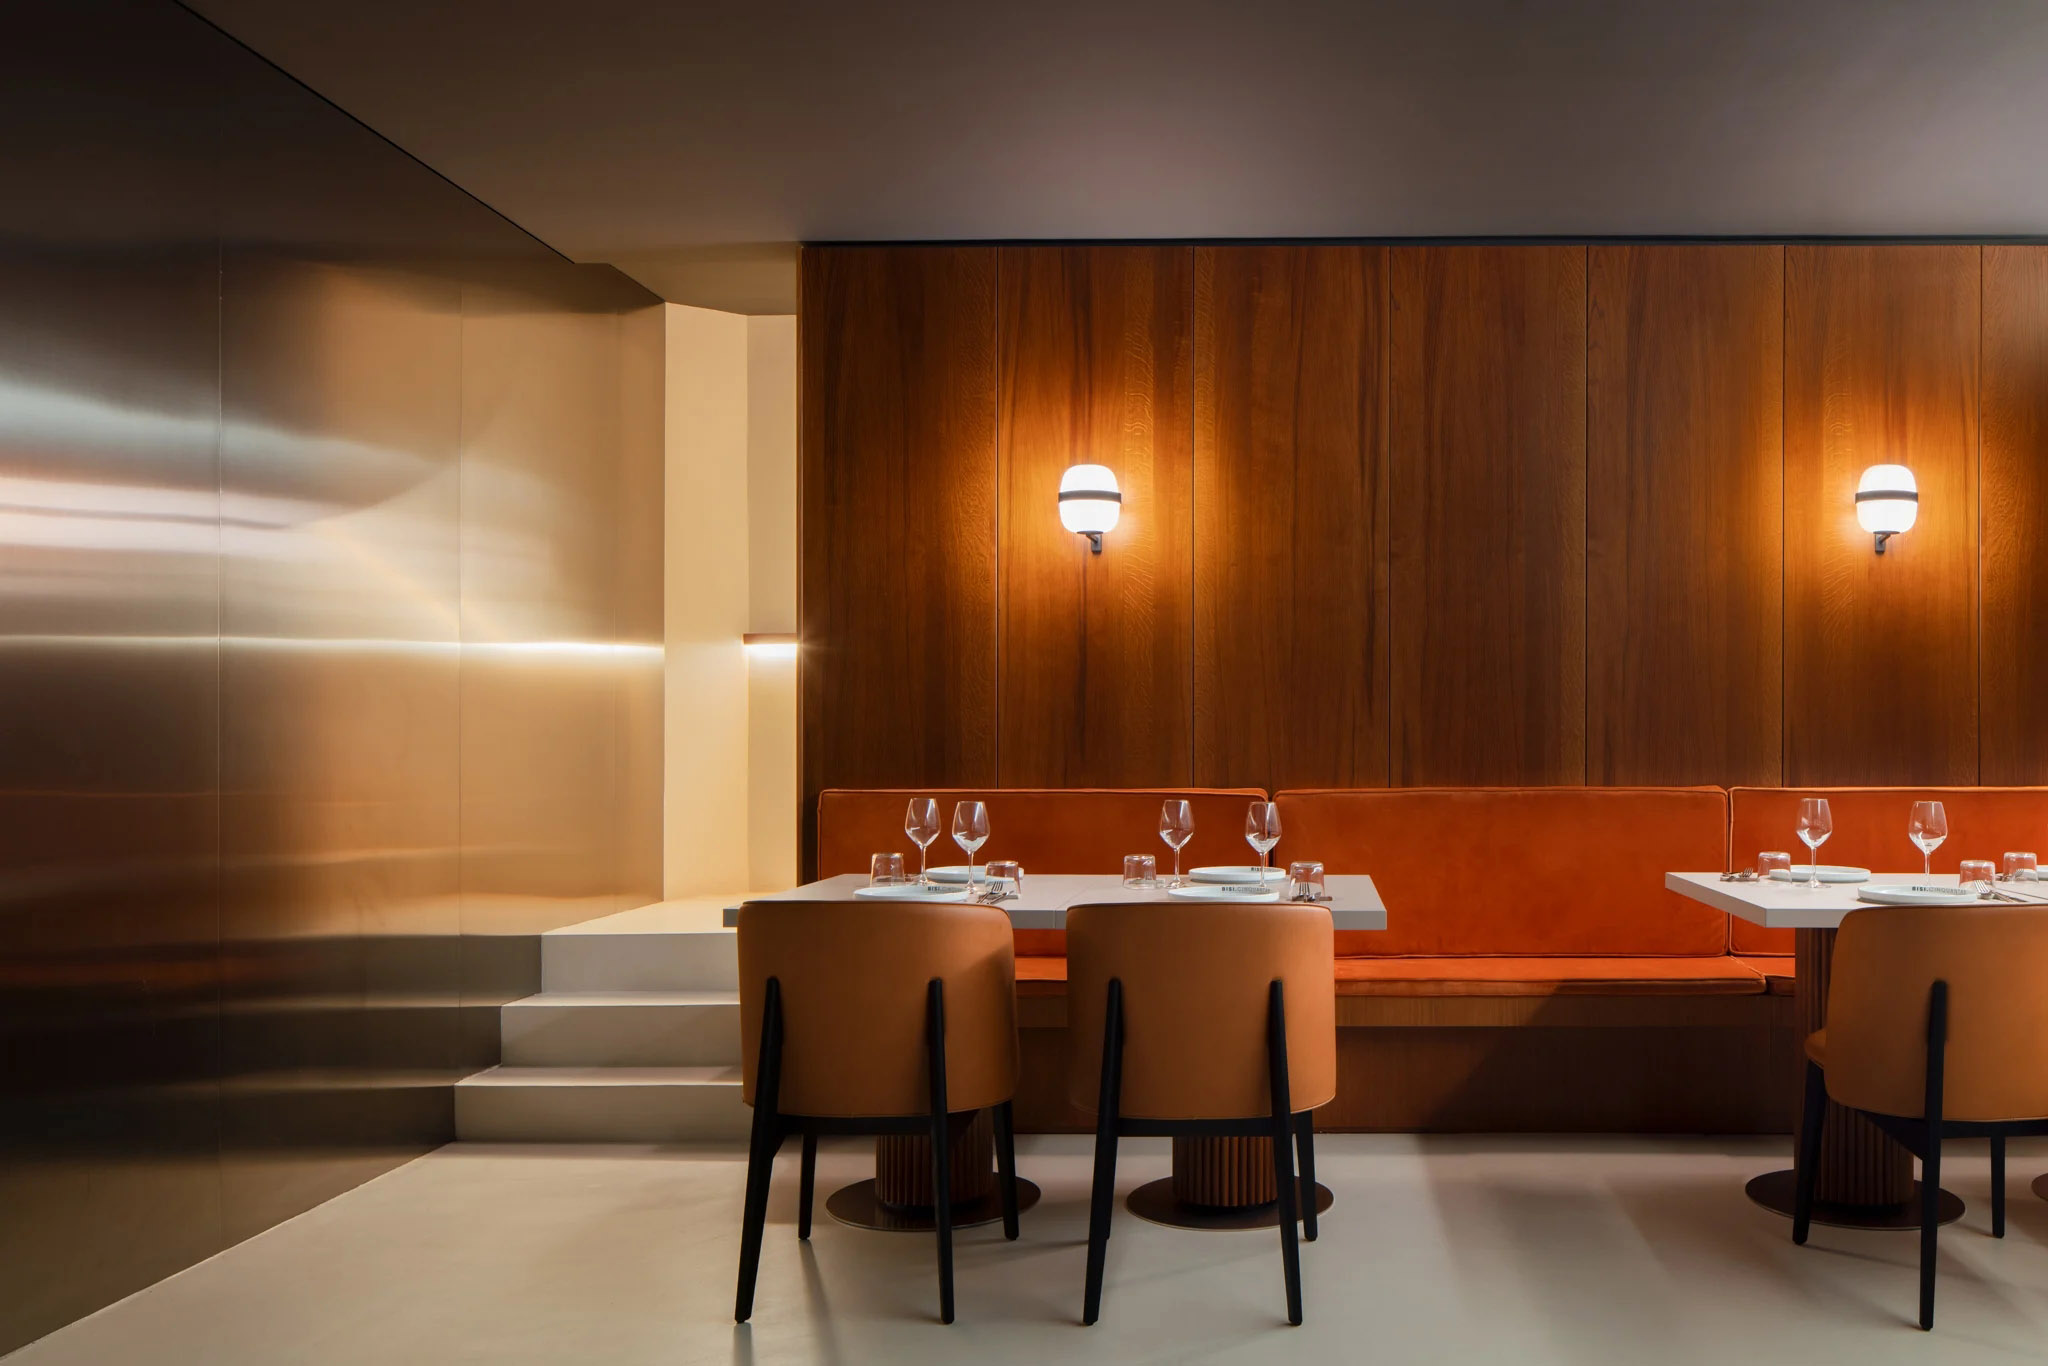 西餐厅设计,FADD Architects,休闲餐厅设计,意大利,现代风格餐厅设计案例,高级西餐厅